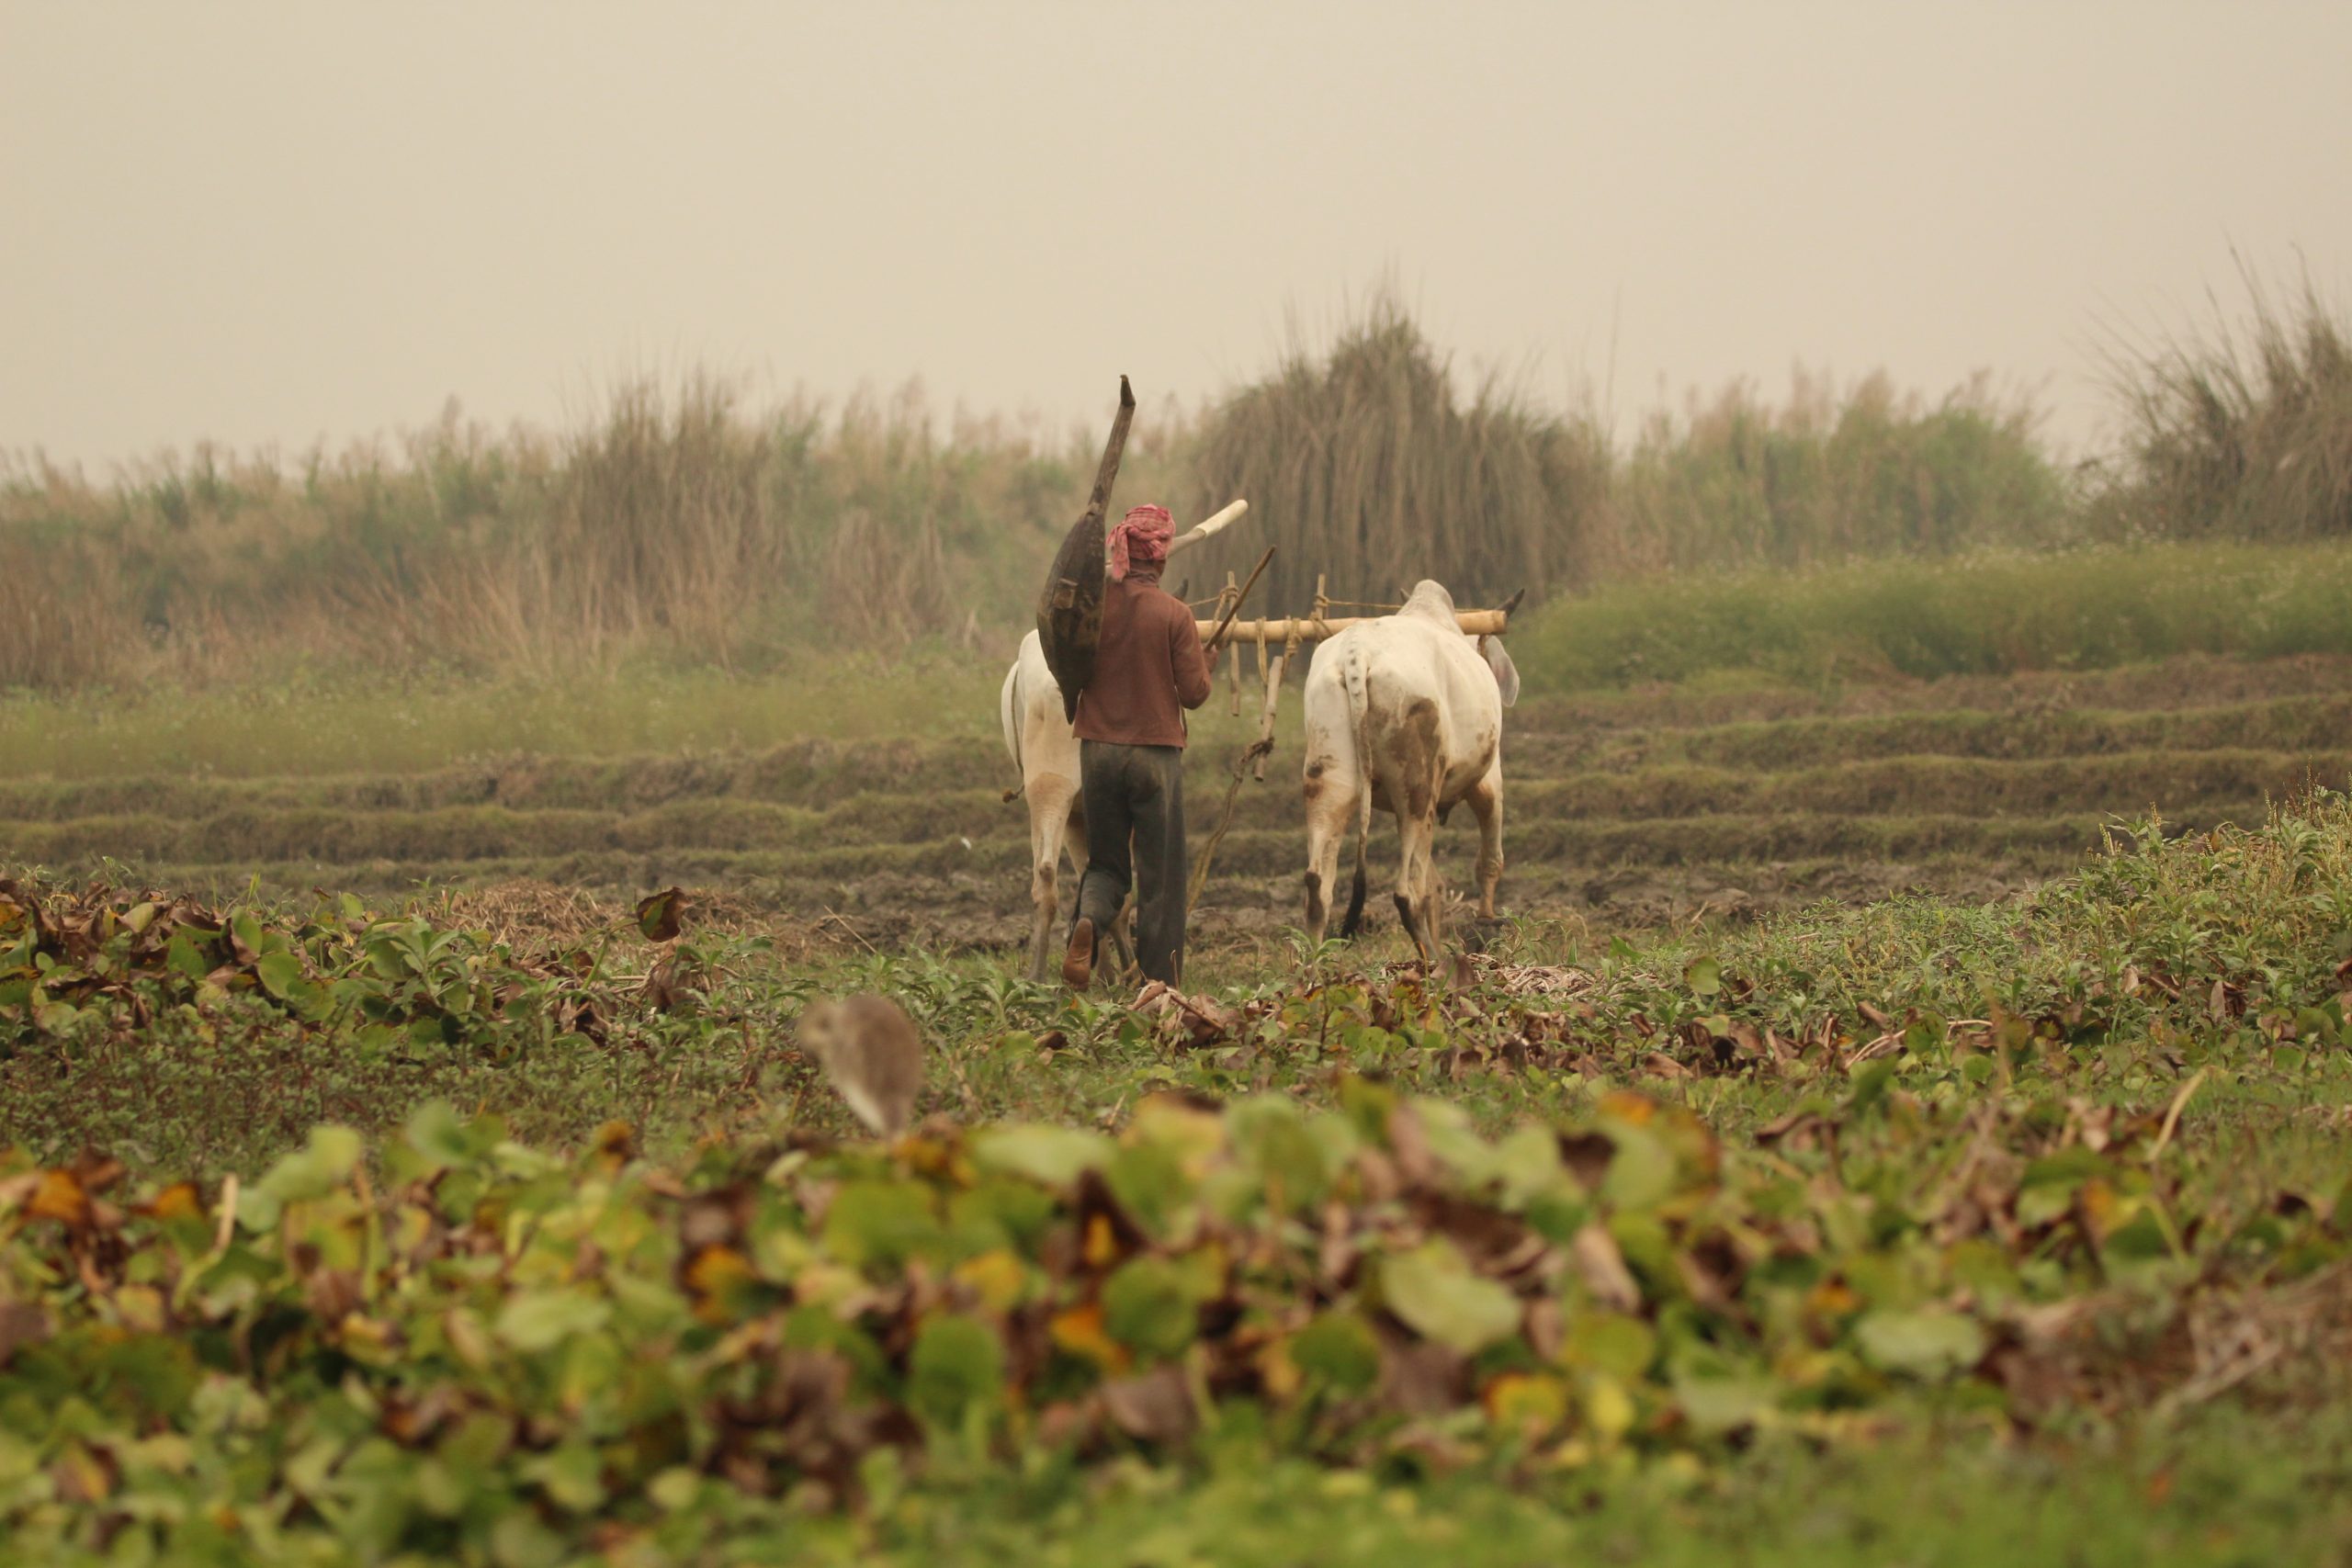 farmer working in the field